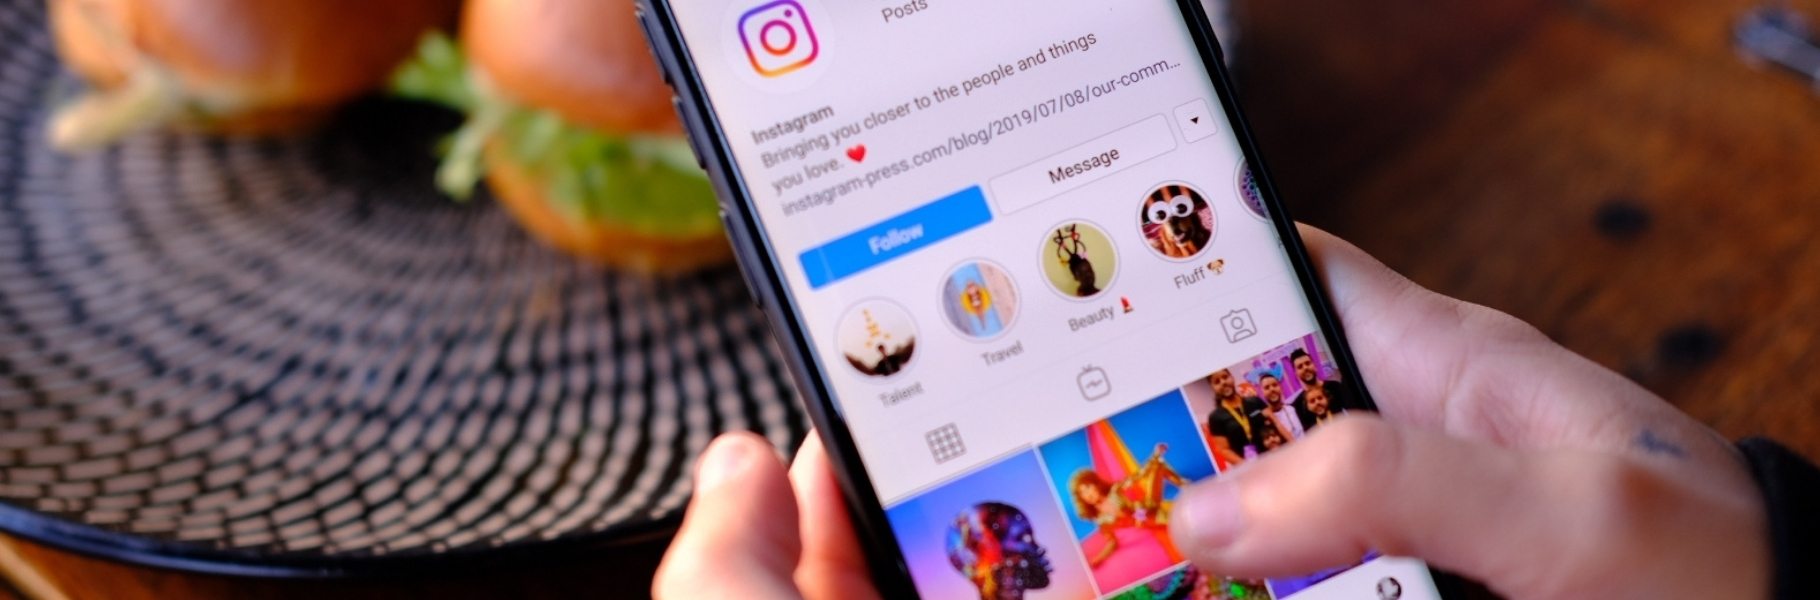 ????¿Cómo poner varias fotos en una historia de Instagram? | Crehana